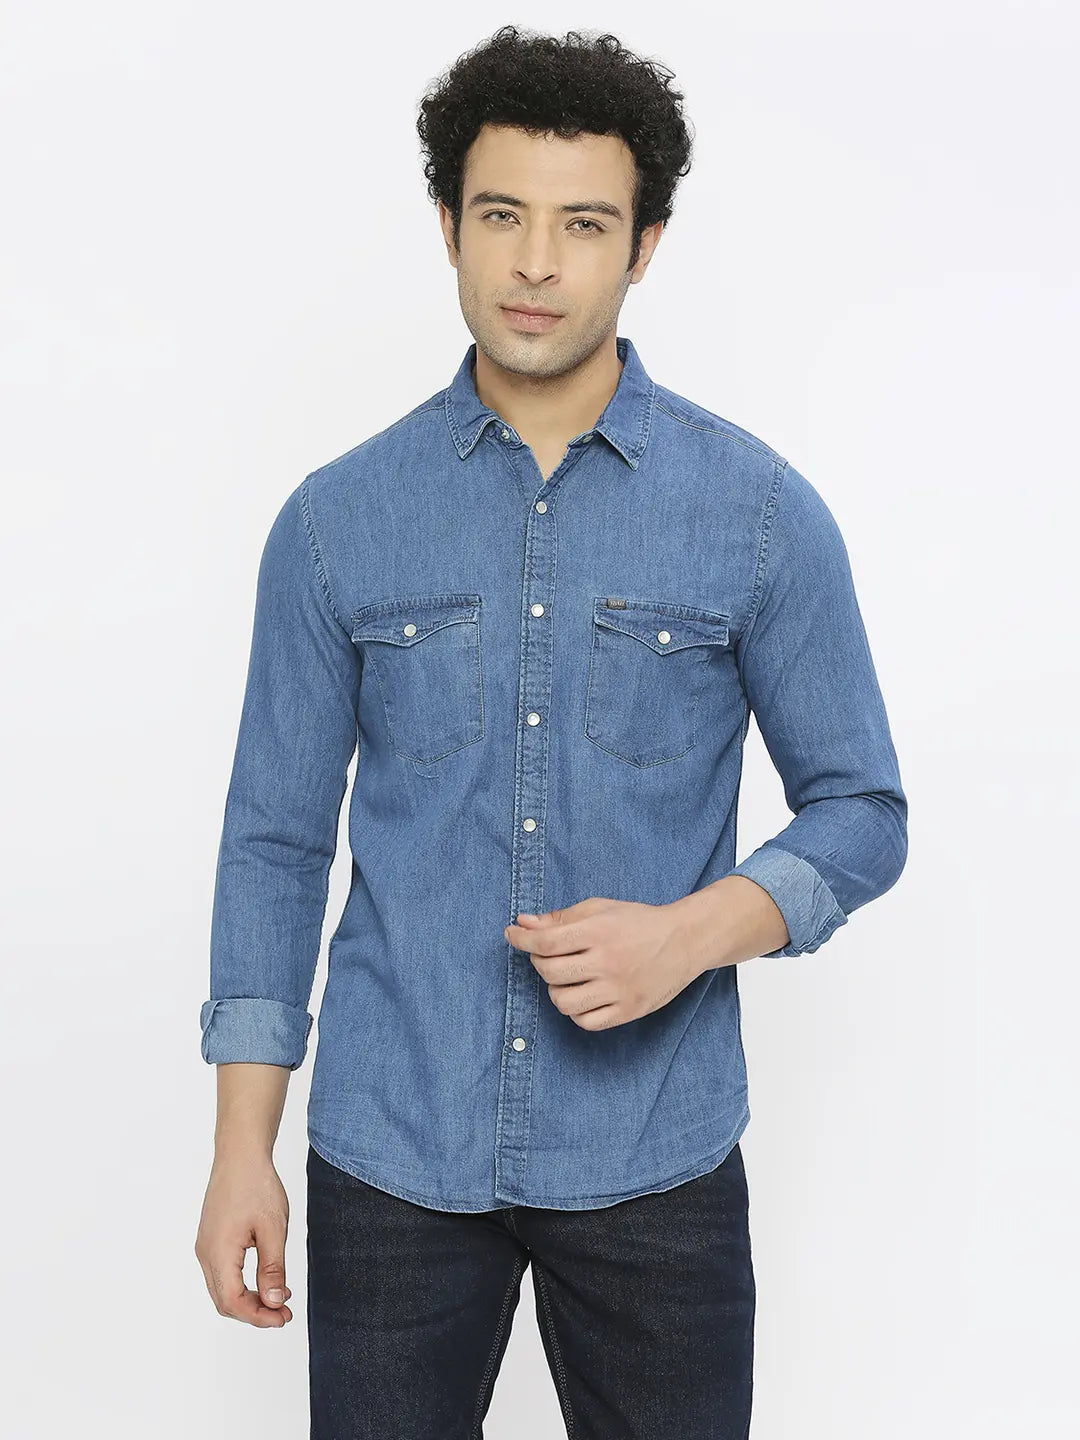 KAAREM - Opaque Button-Up Pocket Denim Shirt Jacket - Light Blue II